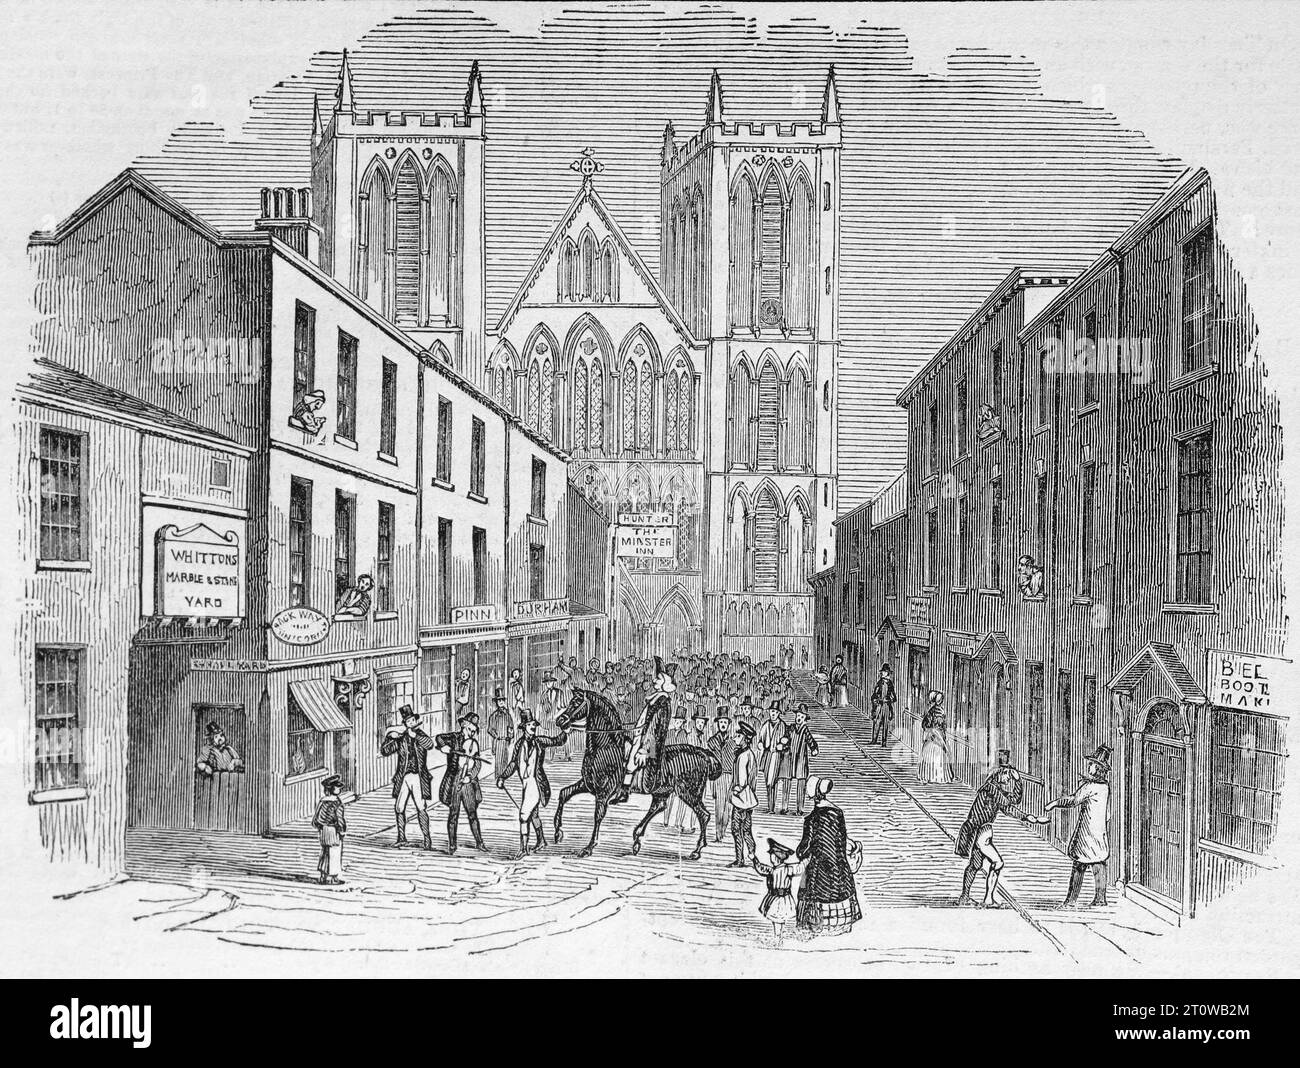 Agosto de 1844. St Festival de Wilfrid, Ripon, Yorkshire del Norte. Ilustración en blanco y negro del London Illustrated News; 1844. Foto de stock